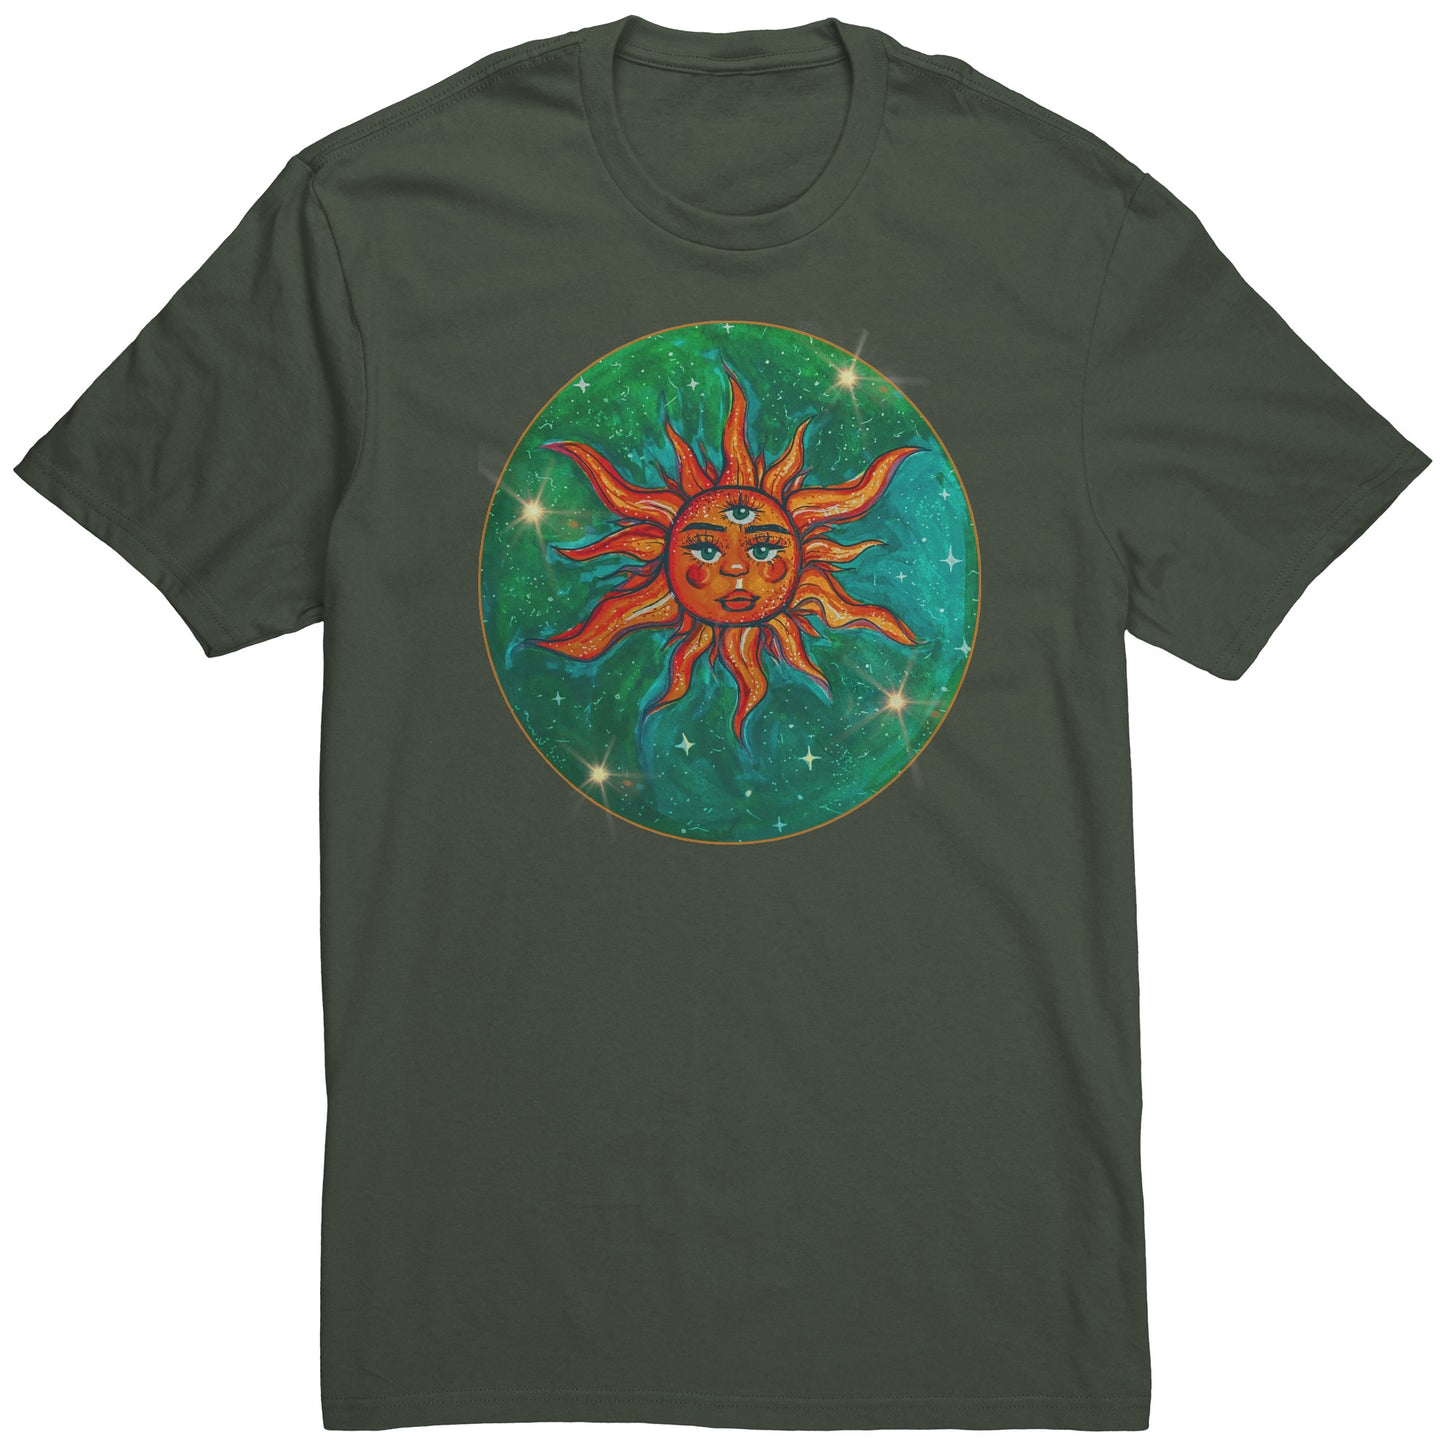 Explore the Universe Celestial Tee: Sun, Earth, Stars T-Shirt